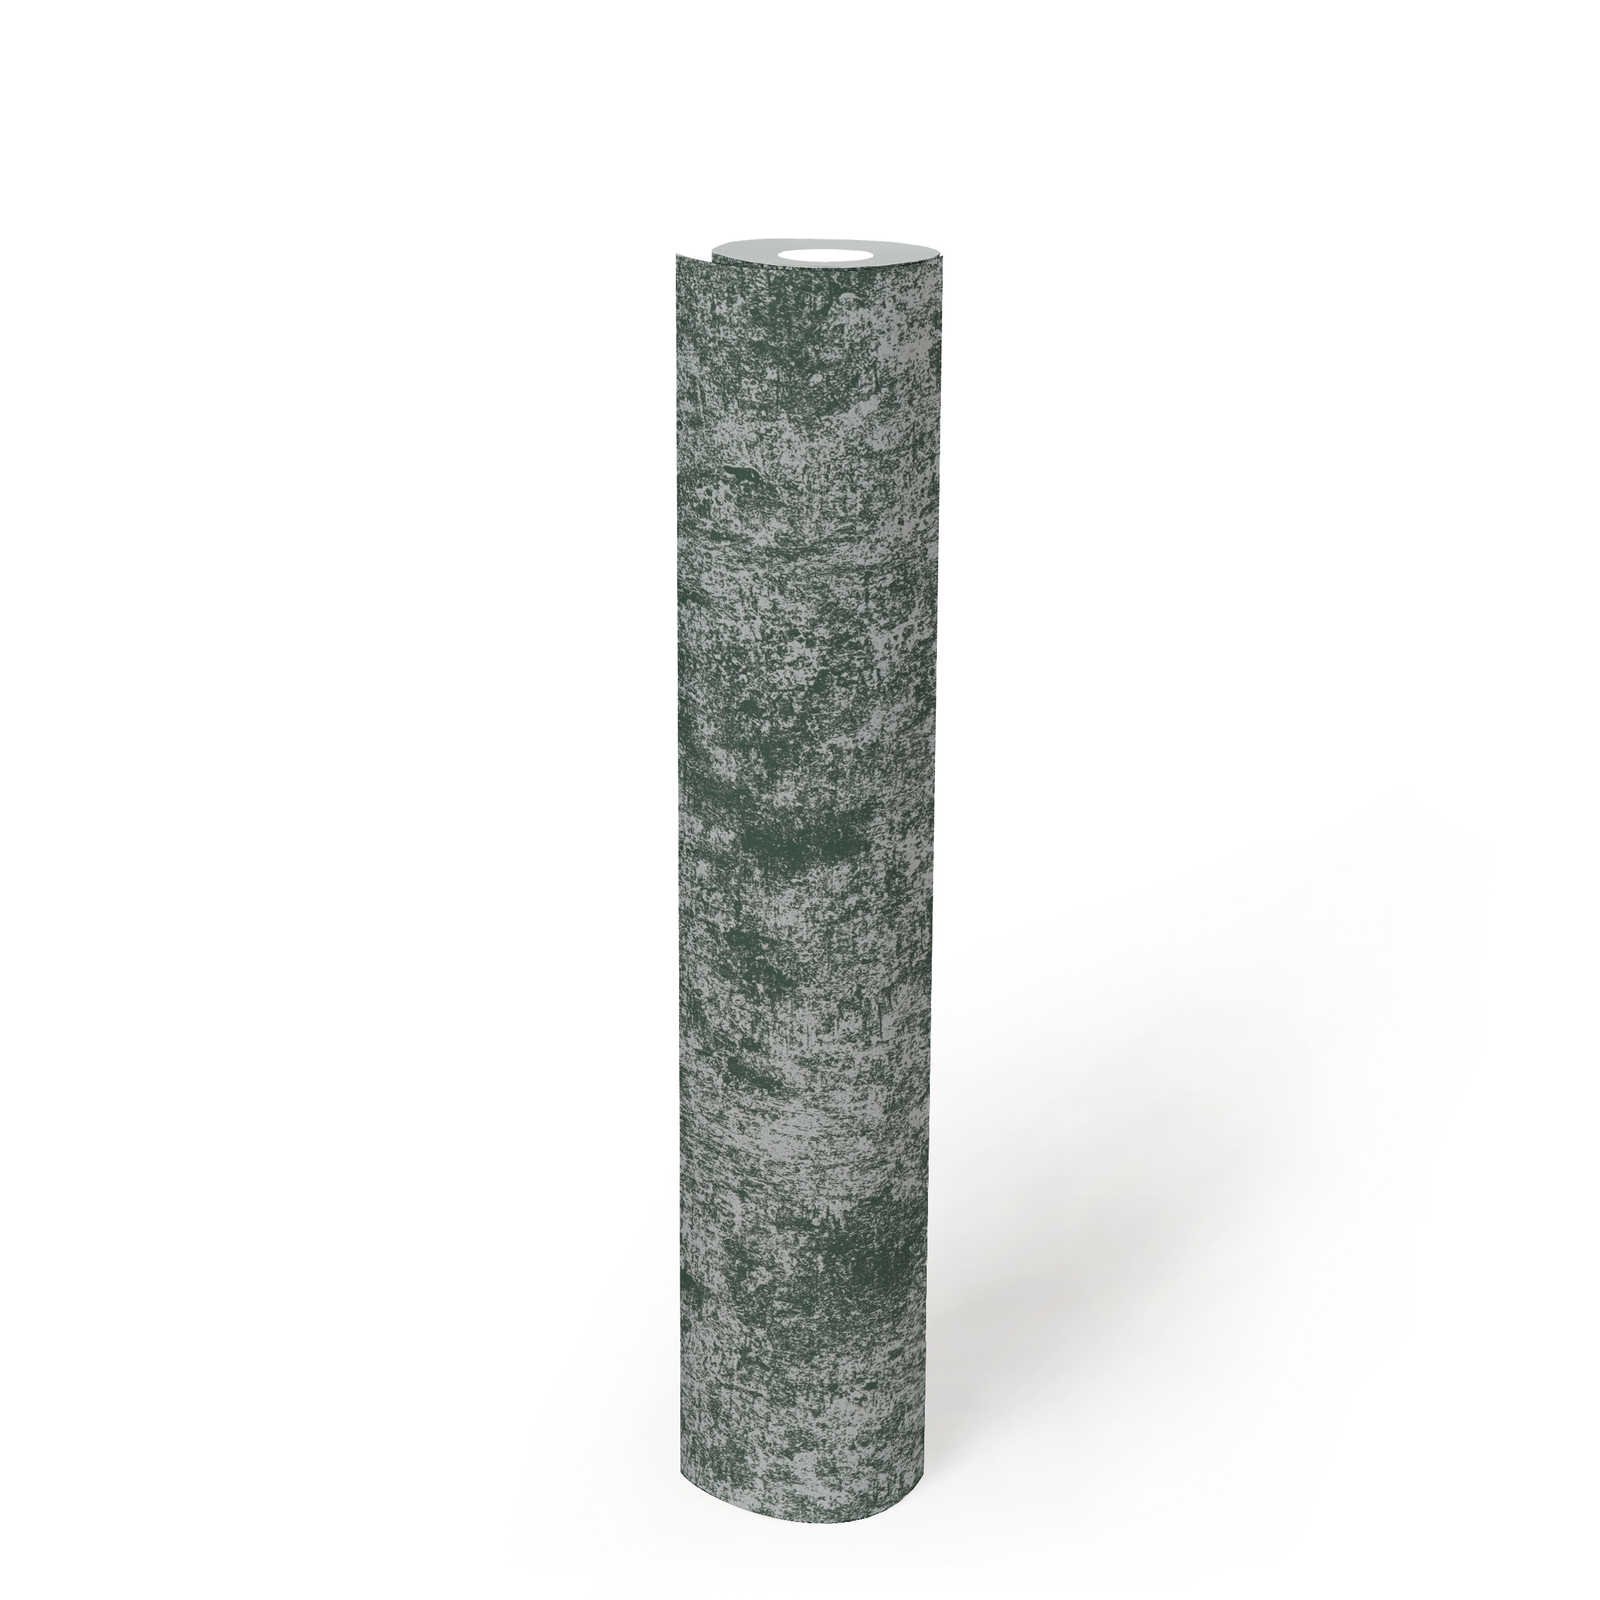             Tapete in Metalloptik mit Glanzeffekt glatt – Grün, Silber
        